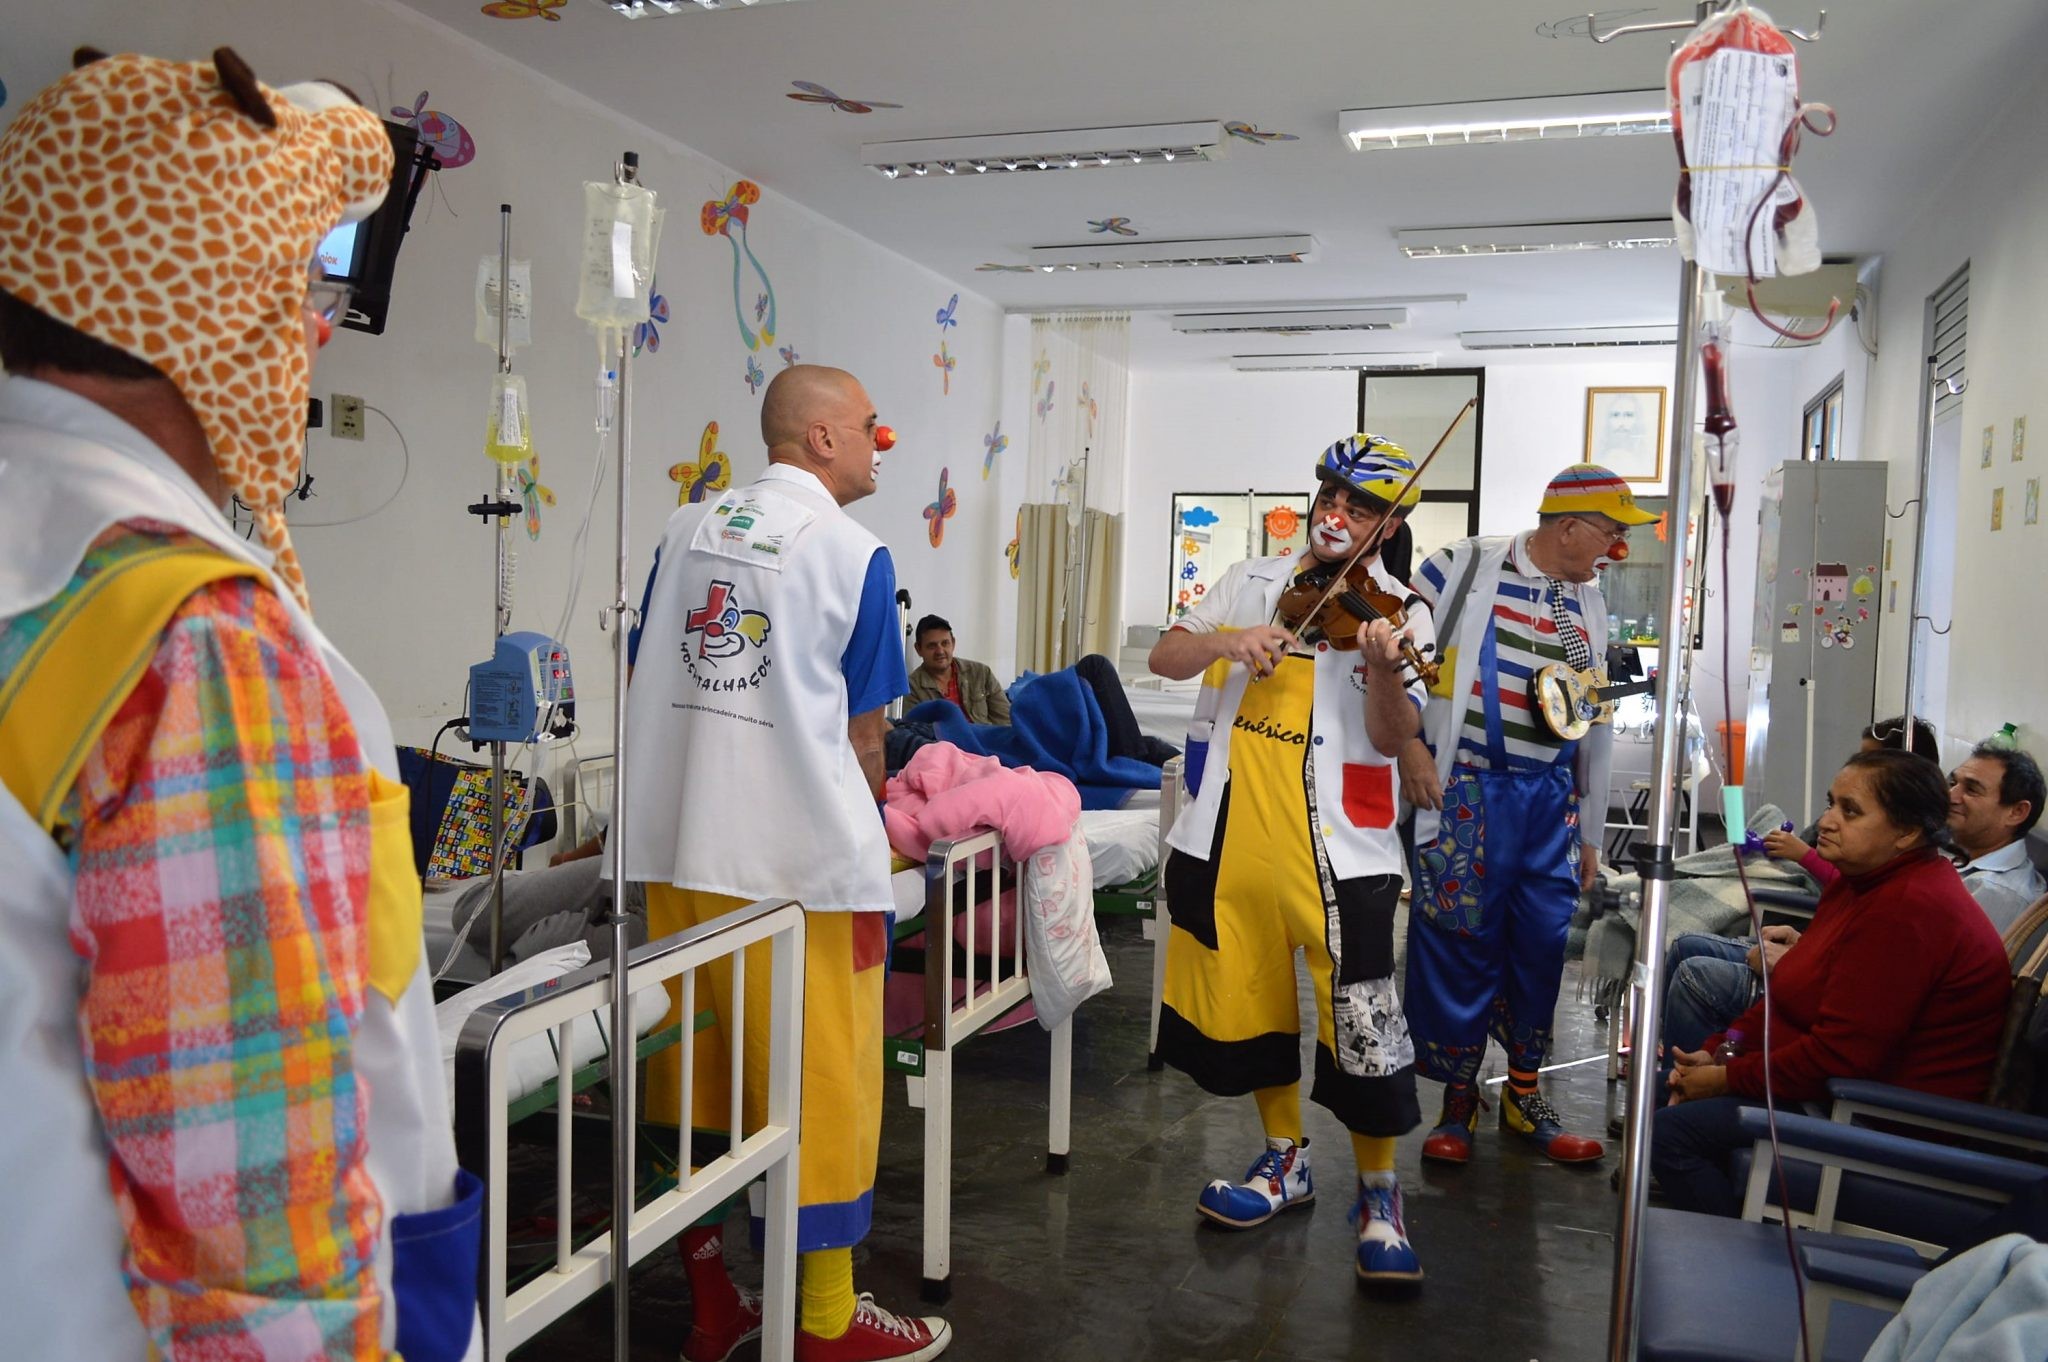 ONG Hospitalhaços anuncia fim de atividades após 22 anos de atuação